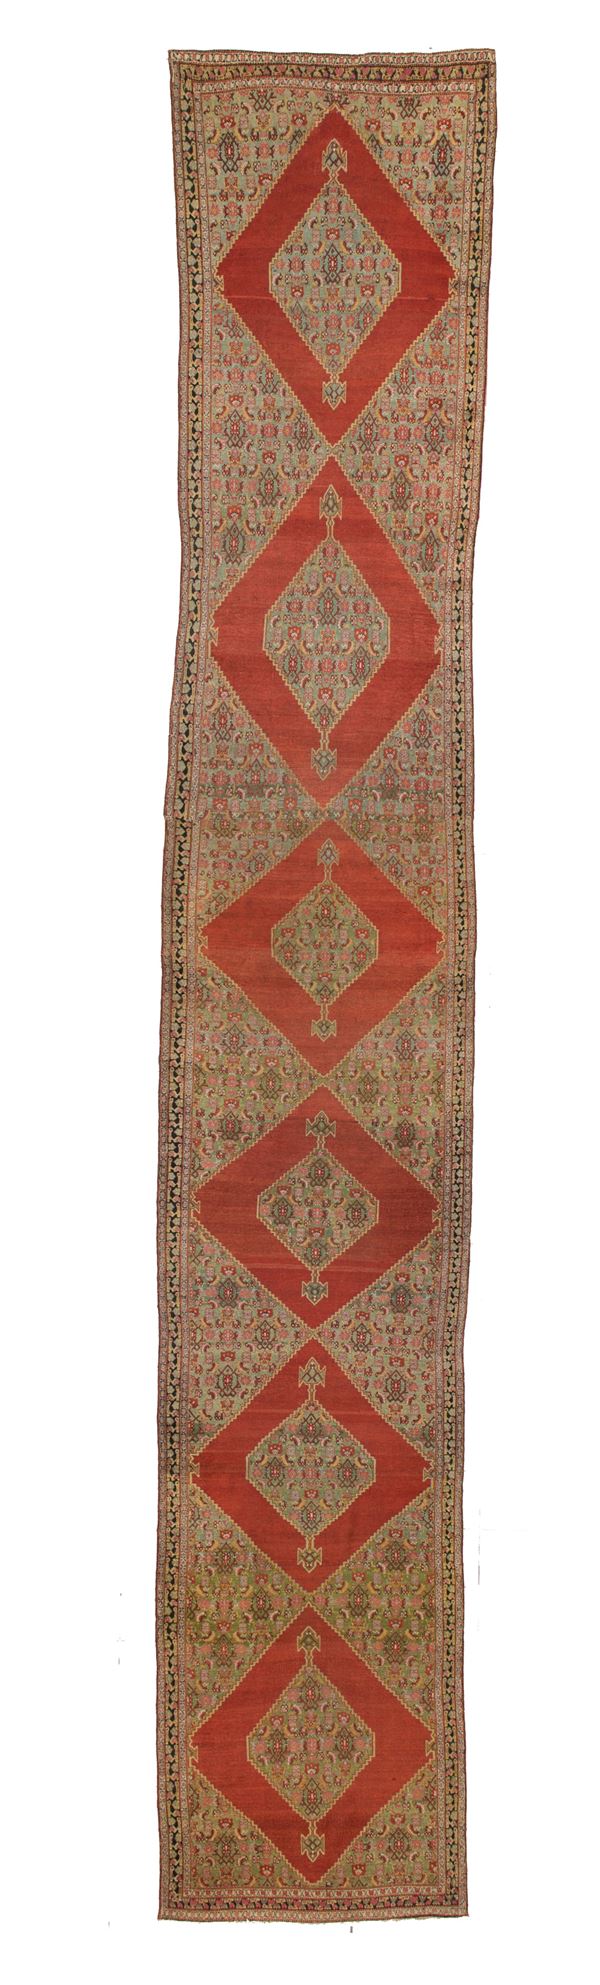 Senneh carpet. Persia